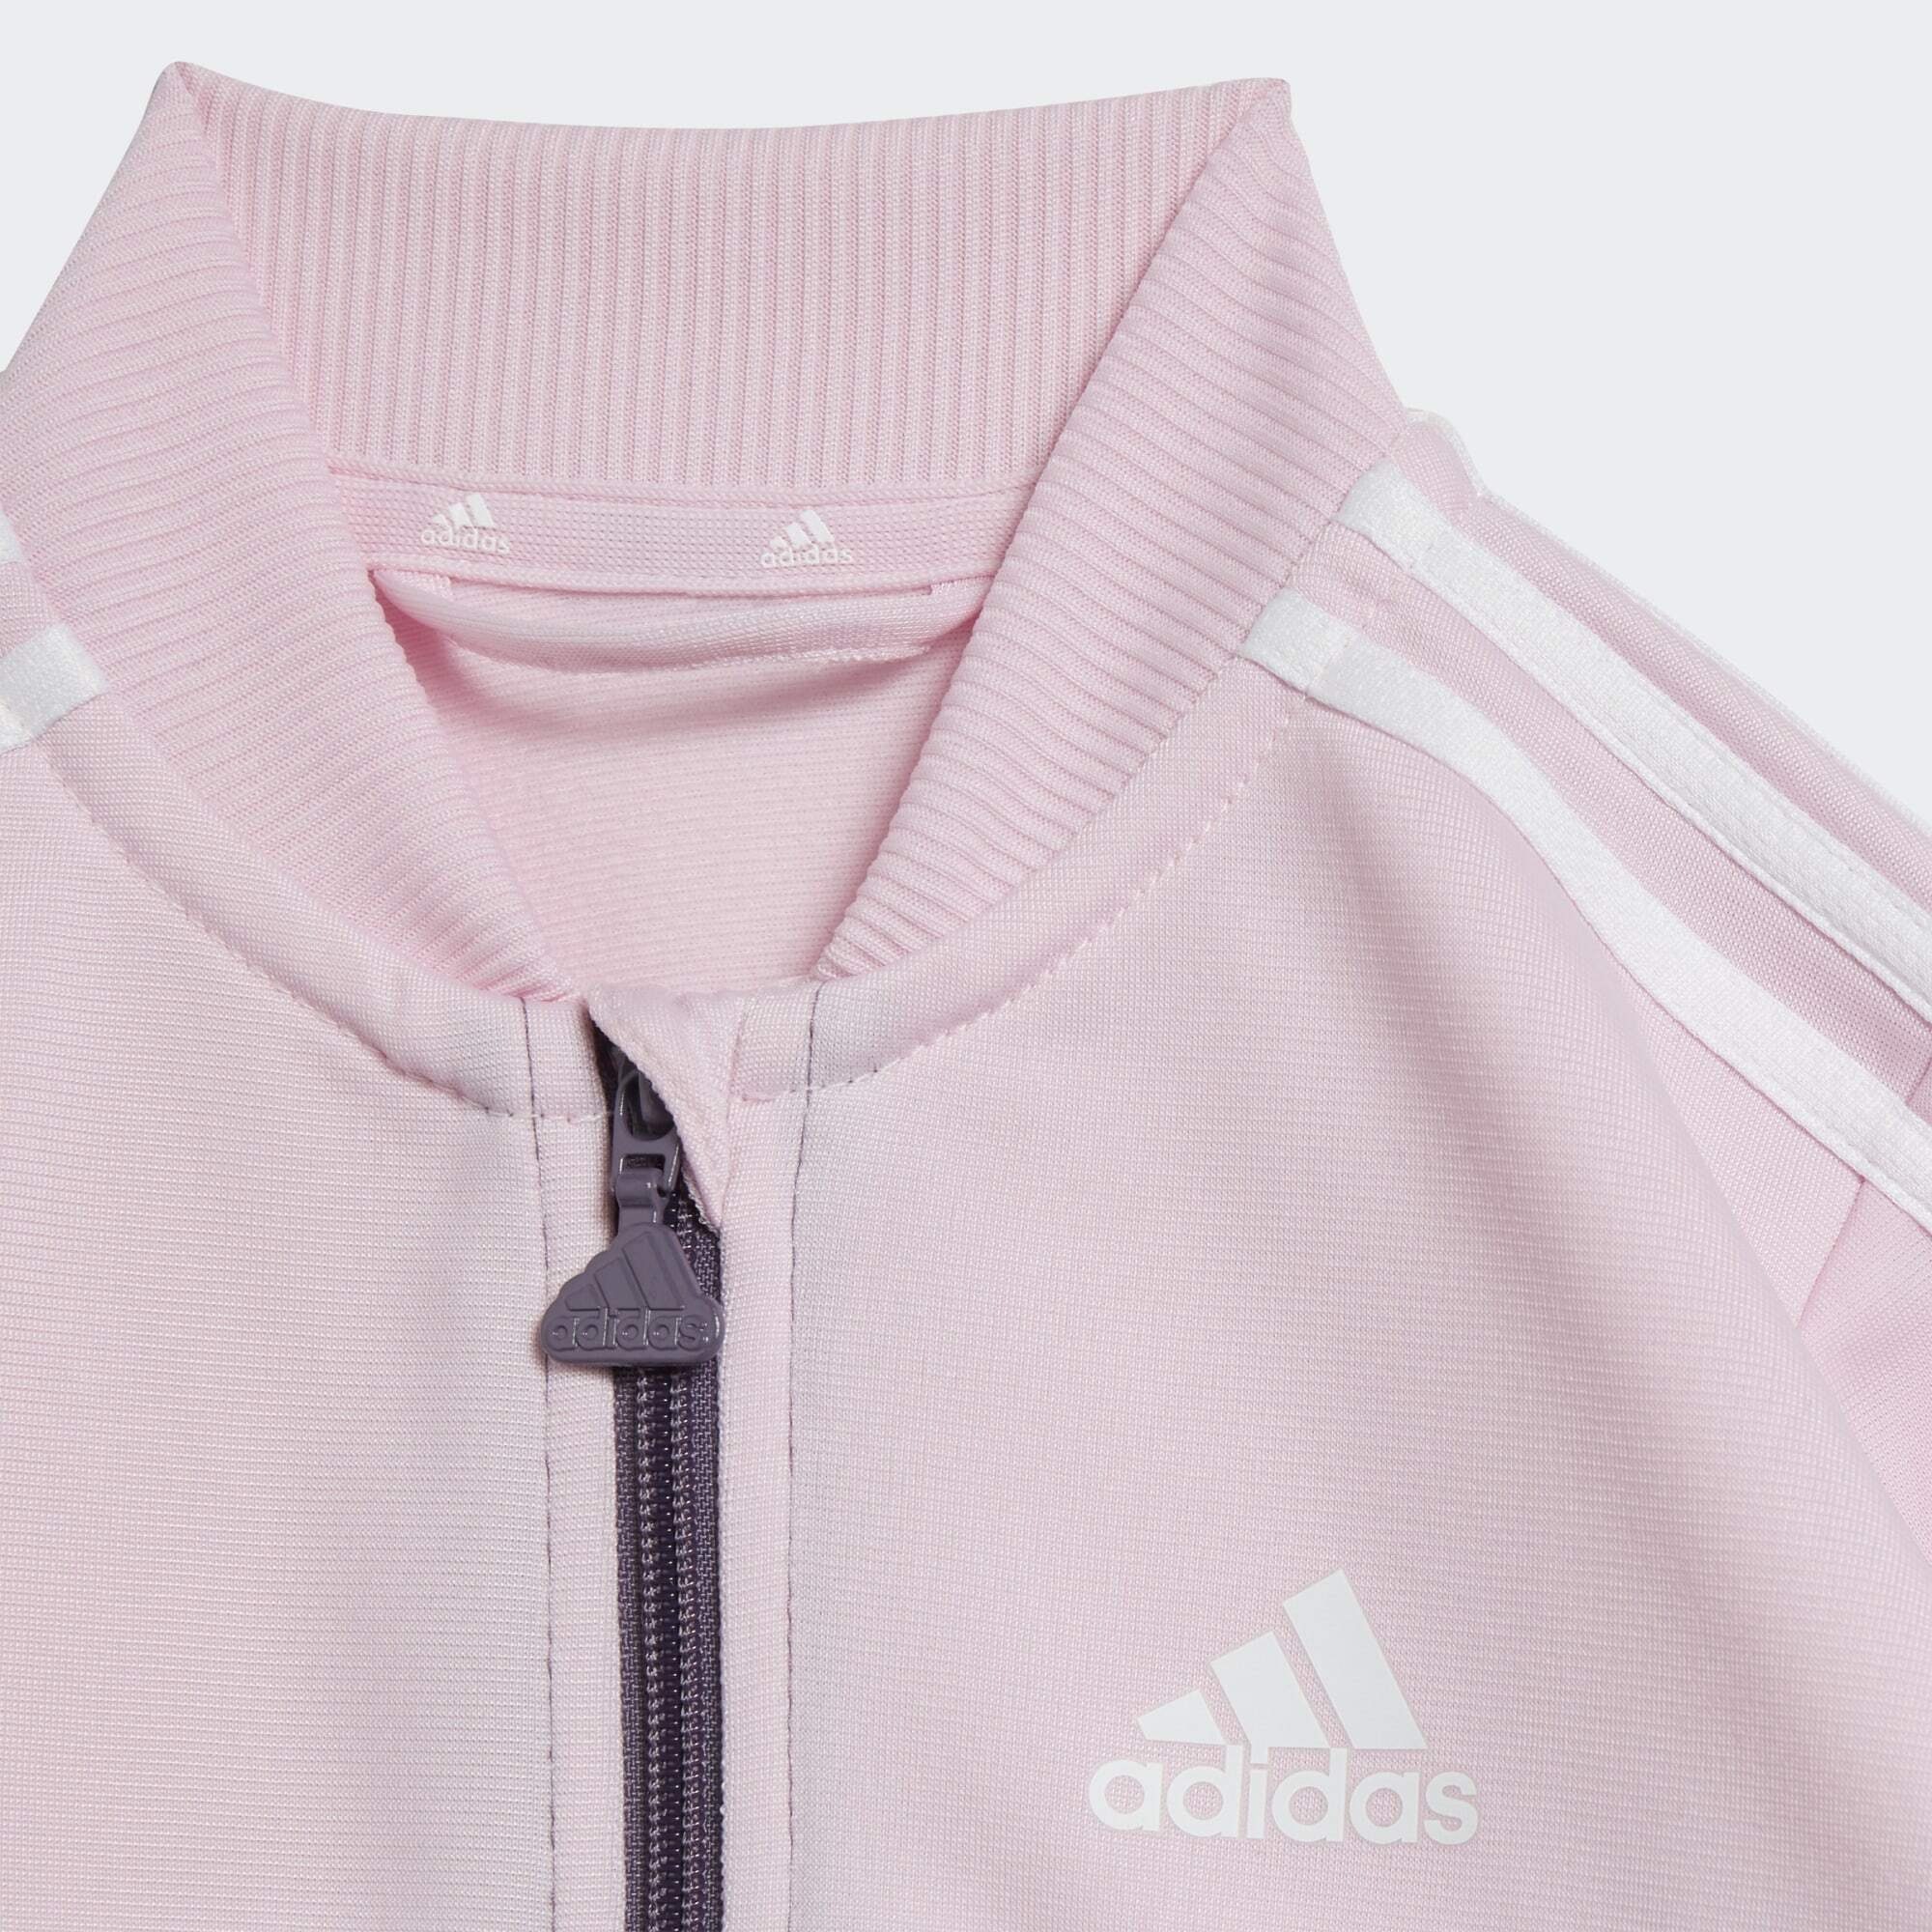 adidas Sportswear Trainingsanzug Clear Pink / Shadow White Violet 